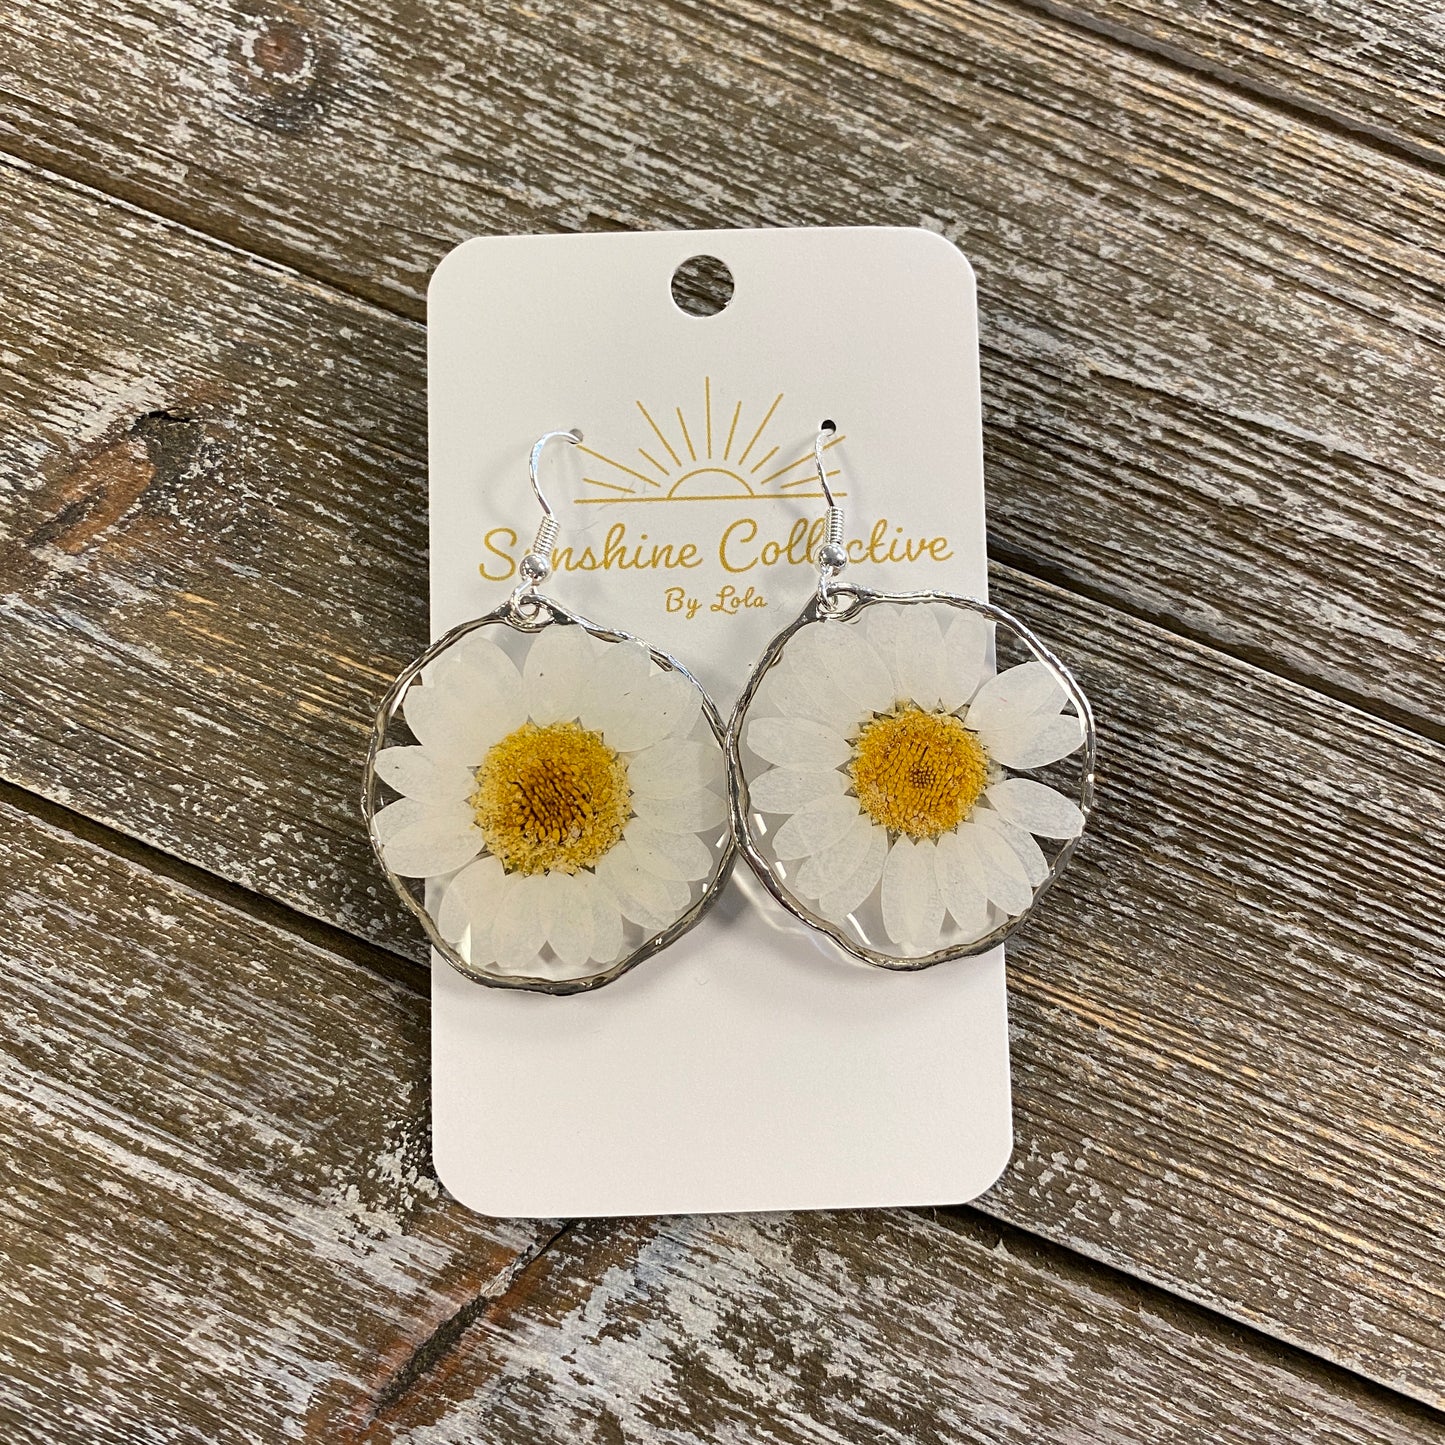 Flower Resin Earrings - Large Round